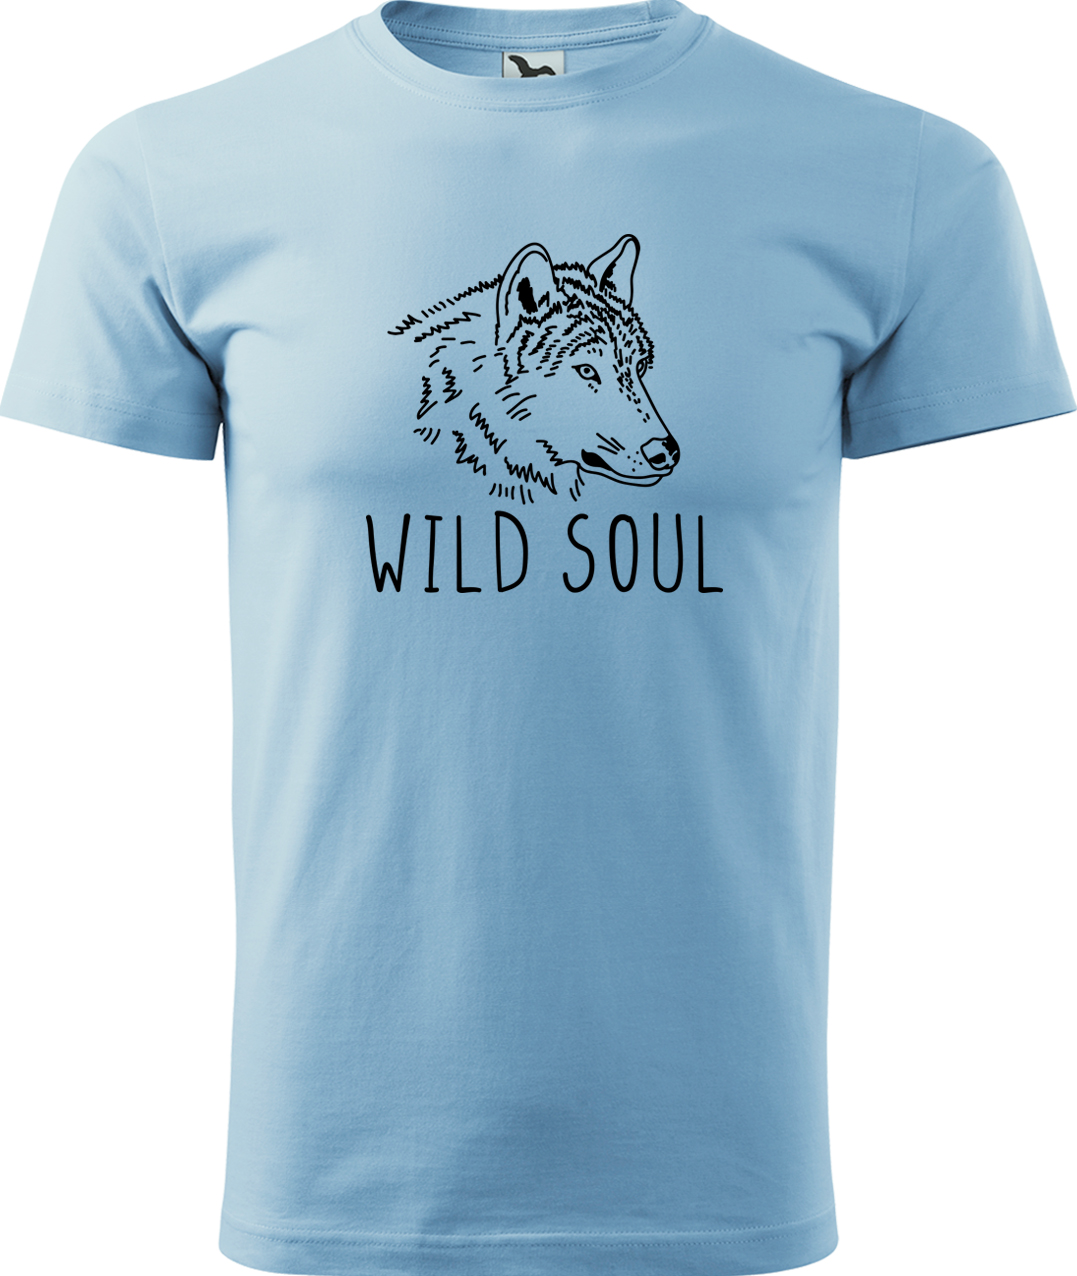 Pánské tričko s vlkem - Wild soul Velikost: XL, Barva: Nebesky modrá (15), Střih: pánský